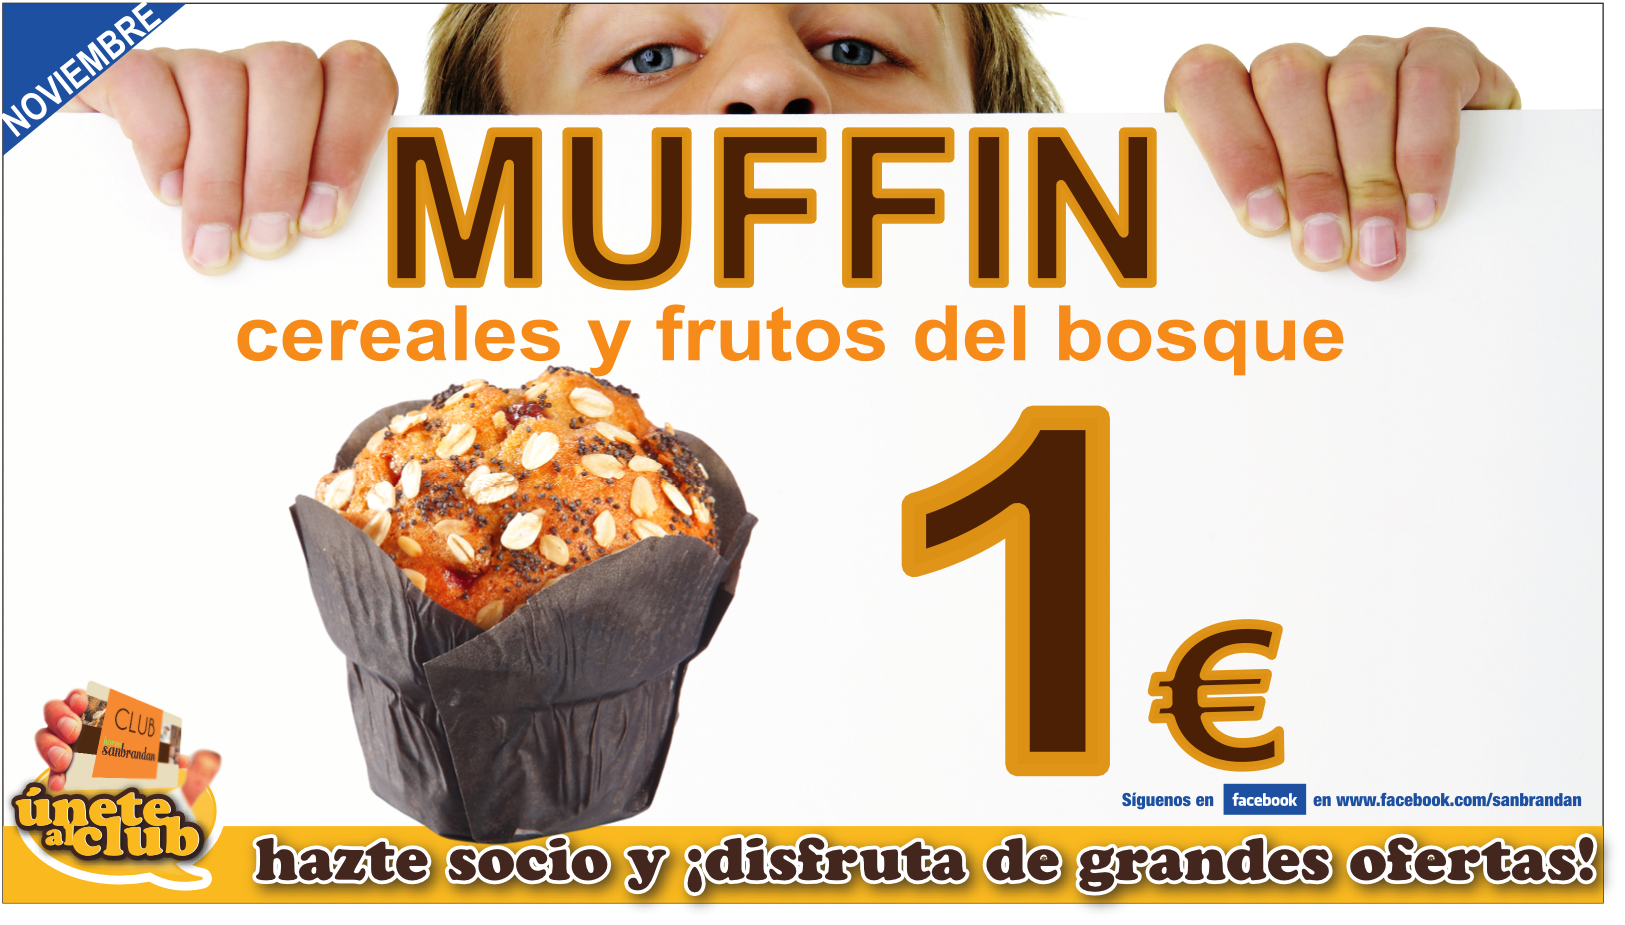 Muffin cereales y frutos del bosque 1 €